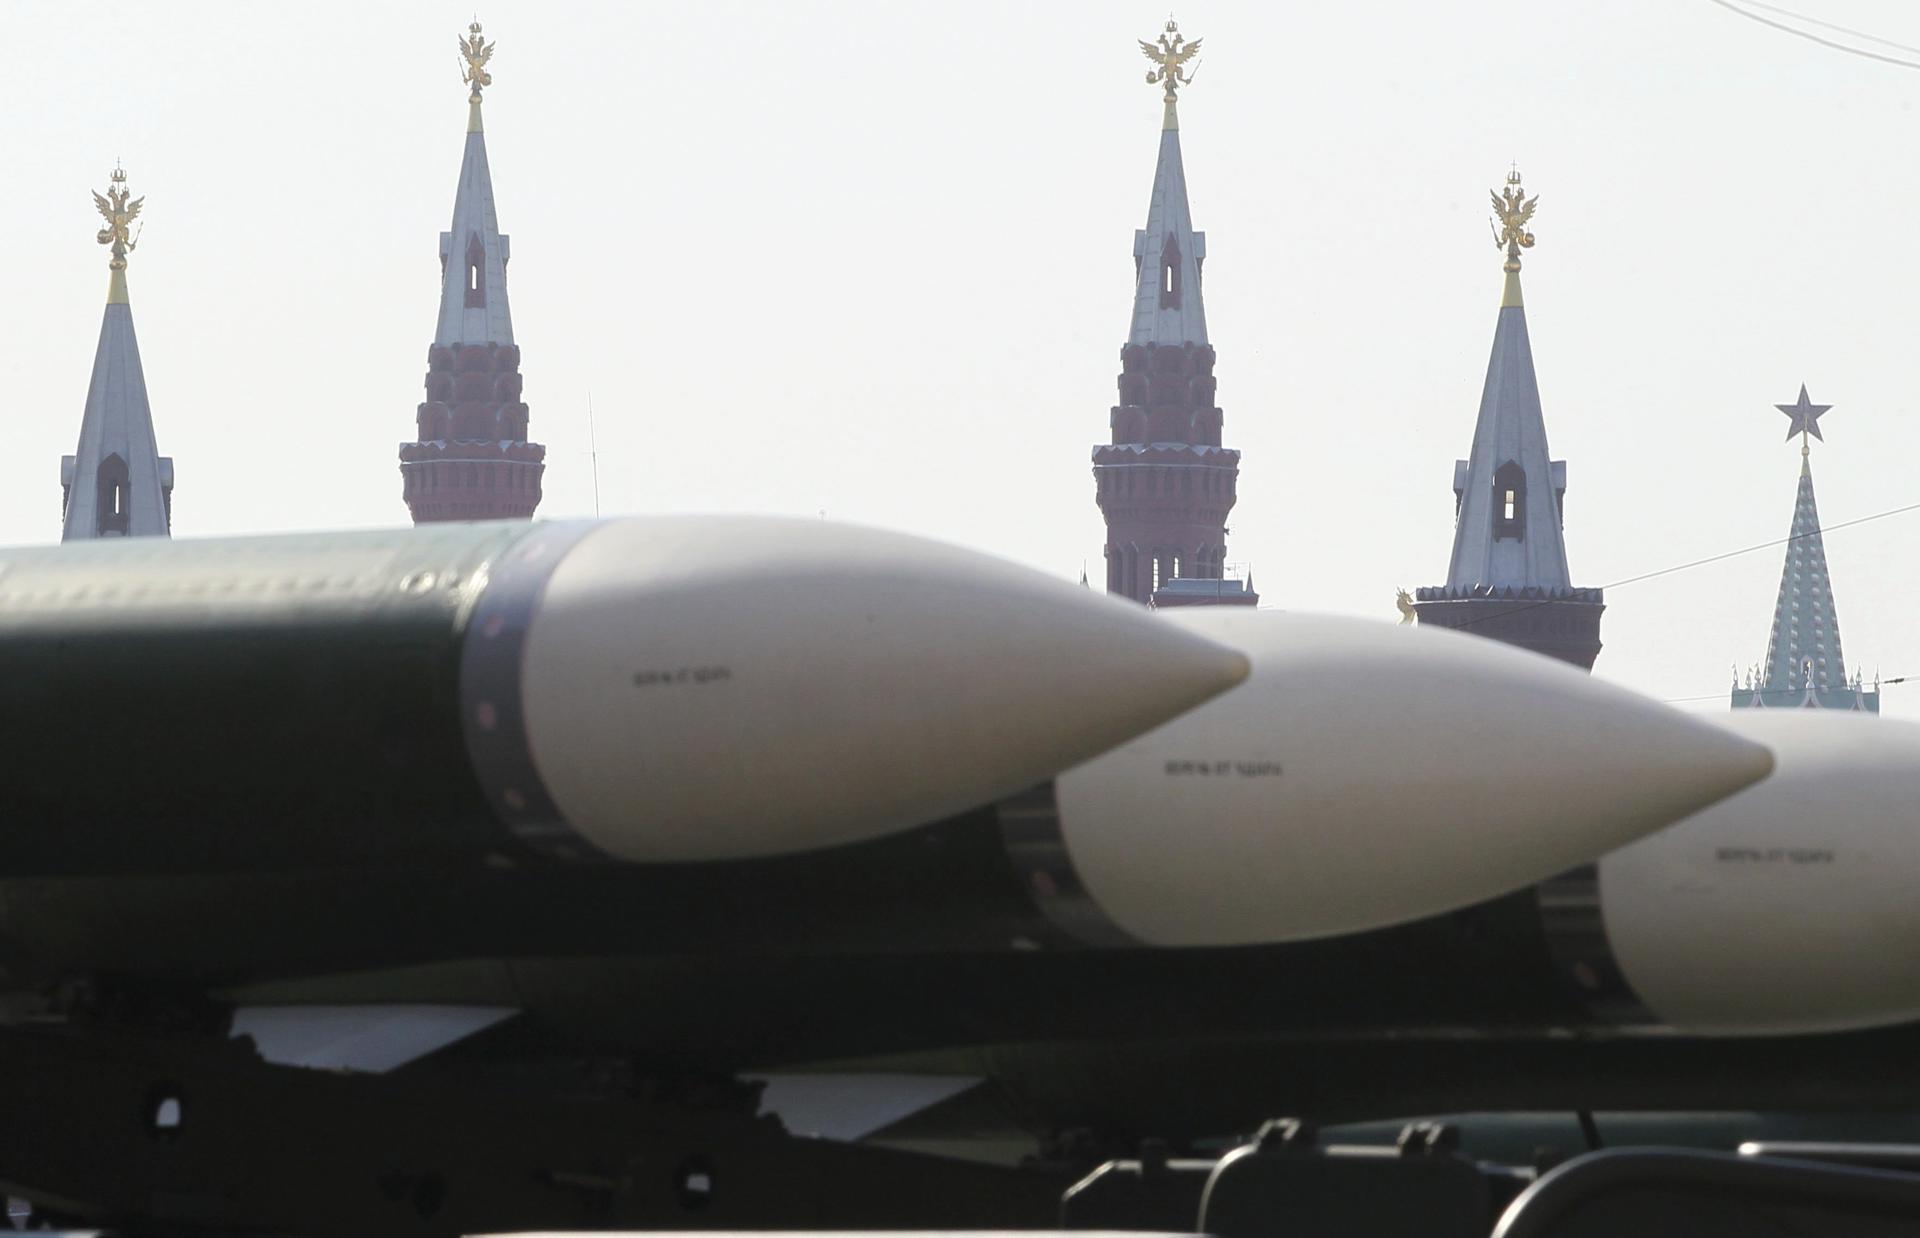 Putin anunció que Rusia suspendió el último tratado de desarme nuclear con EE.UU.